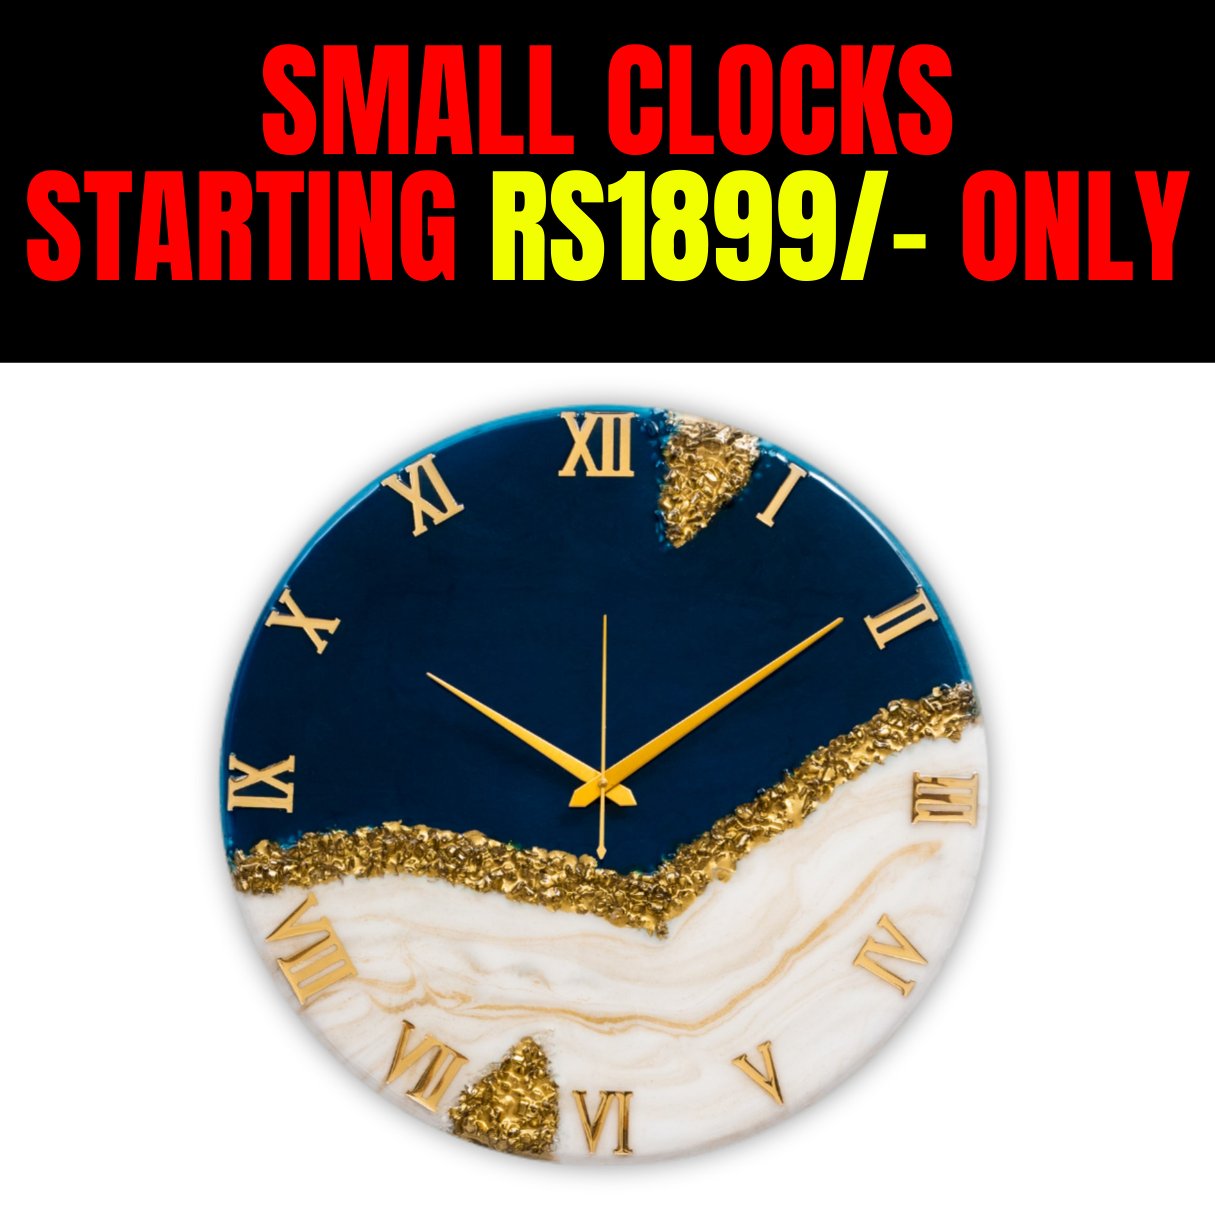 Clocks Small 12 Inches (30cm)